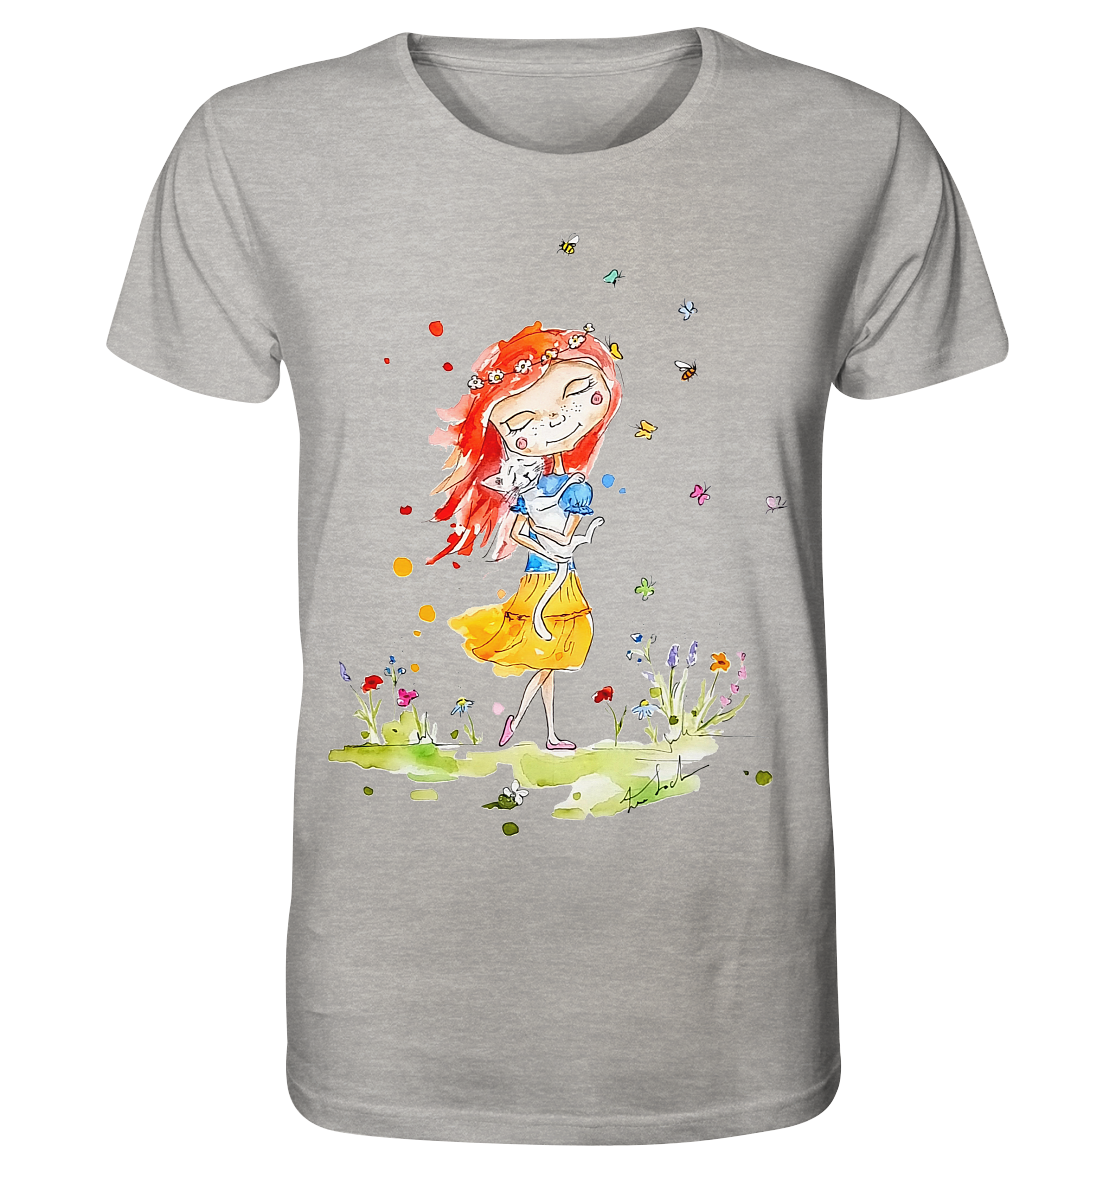 Sommerliches Mädchen mit Katze - Organic Shirt (meliert)